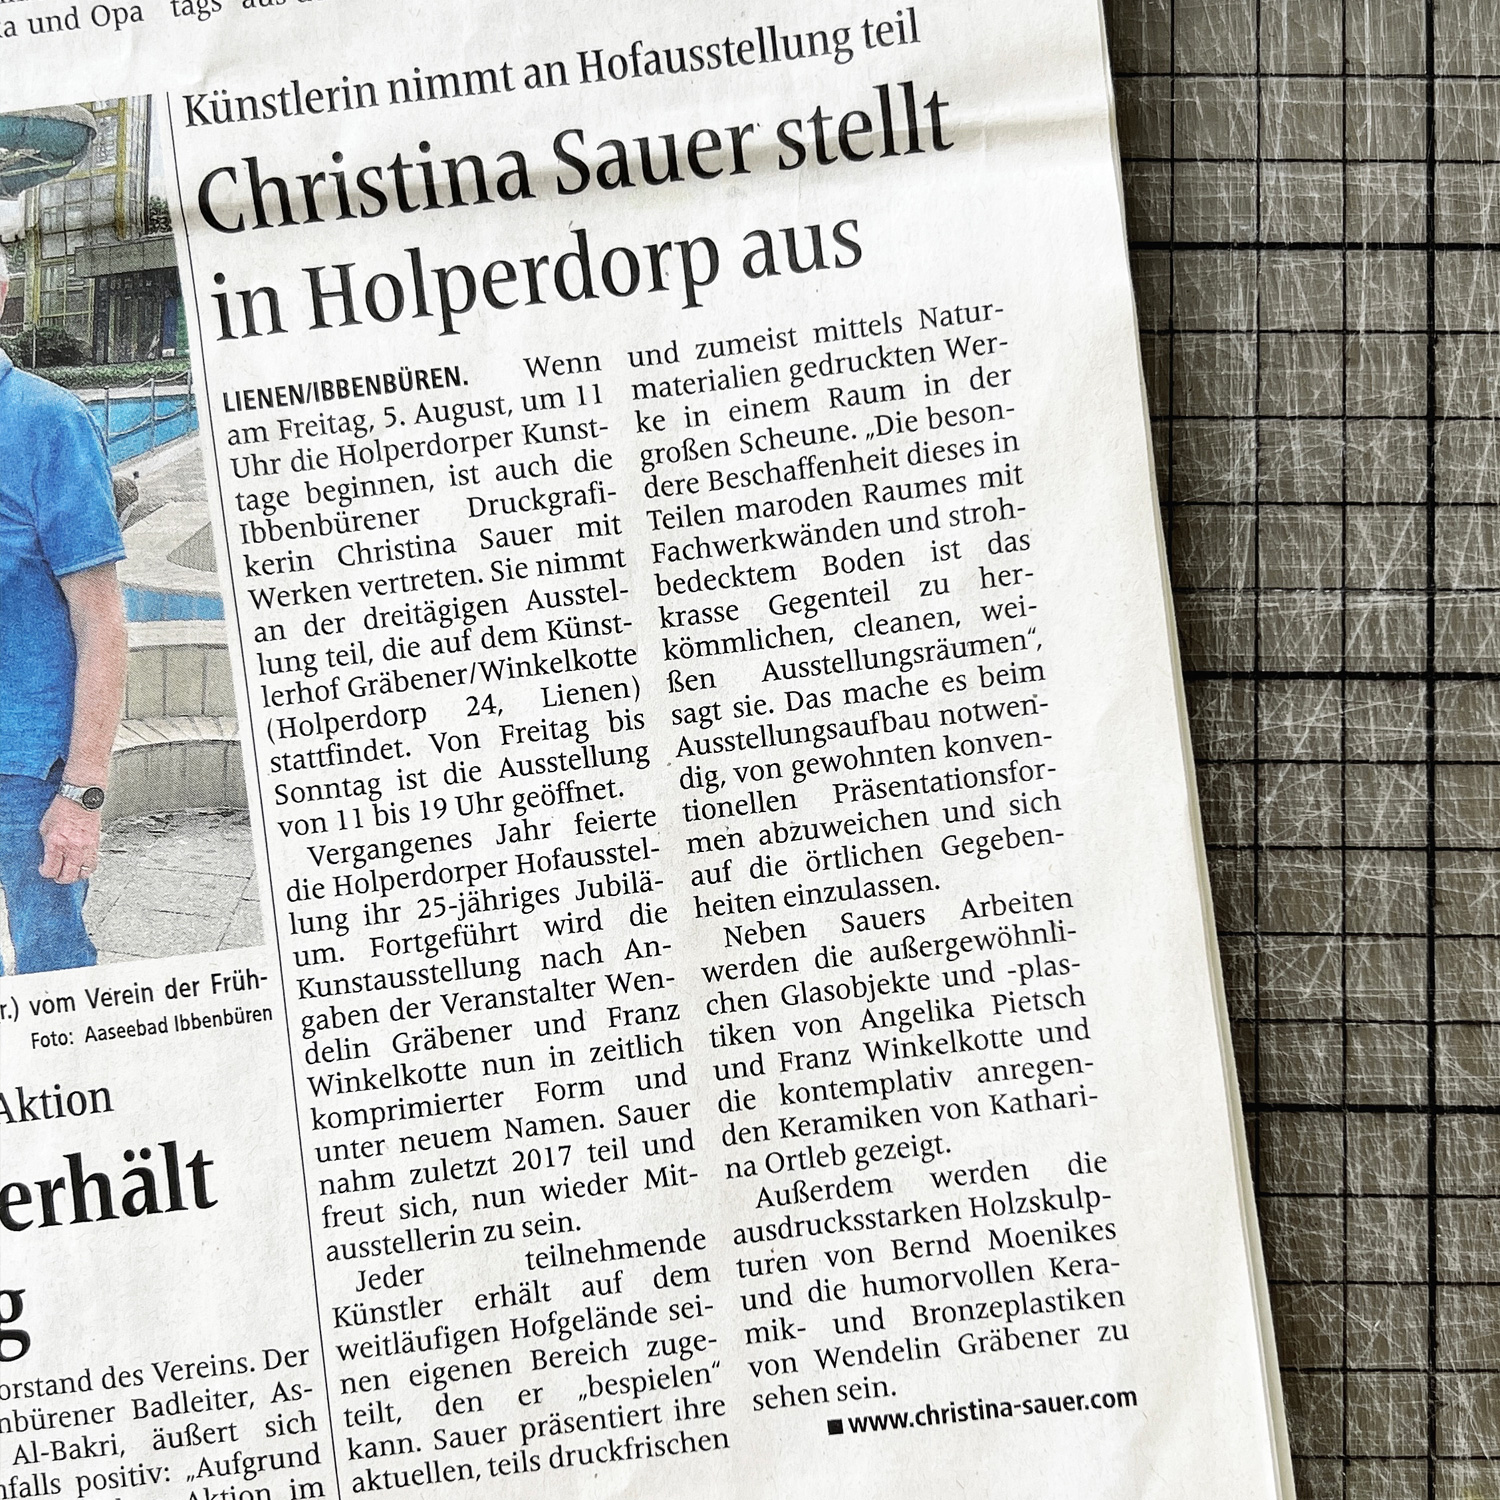 HOLPERDORPER KUNSTTAGE 2022 | Zeitungsartikel IVZ [02.08.2022]